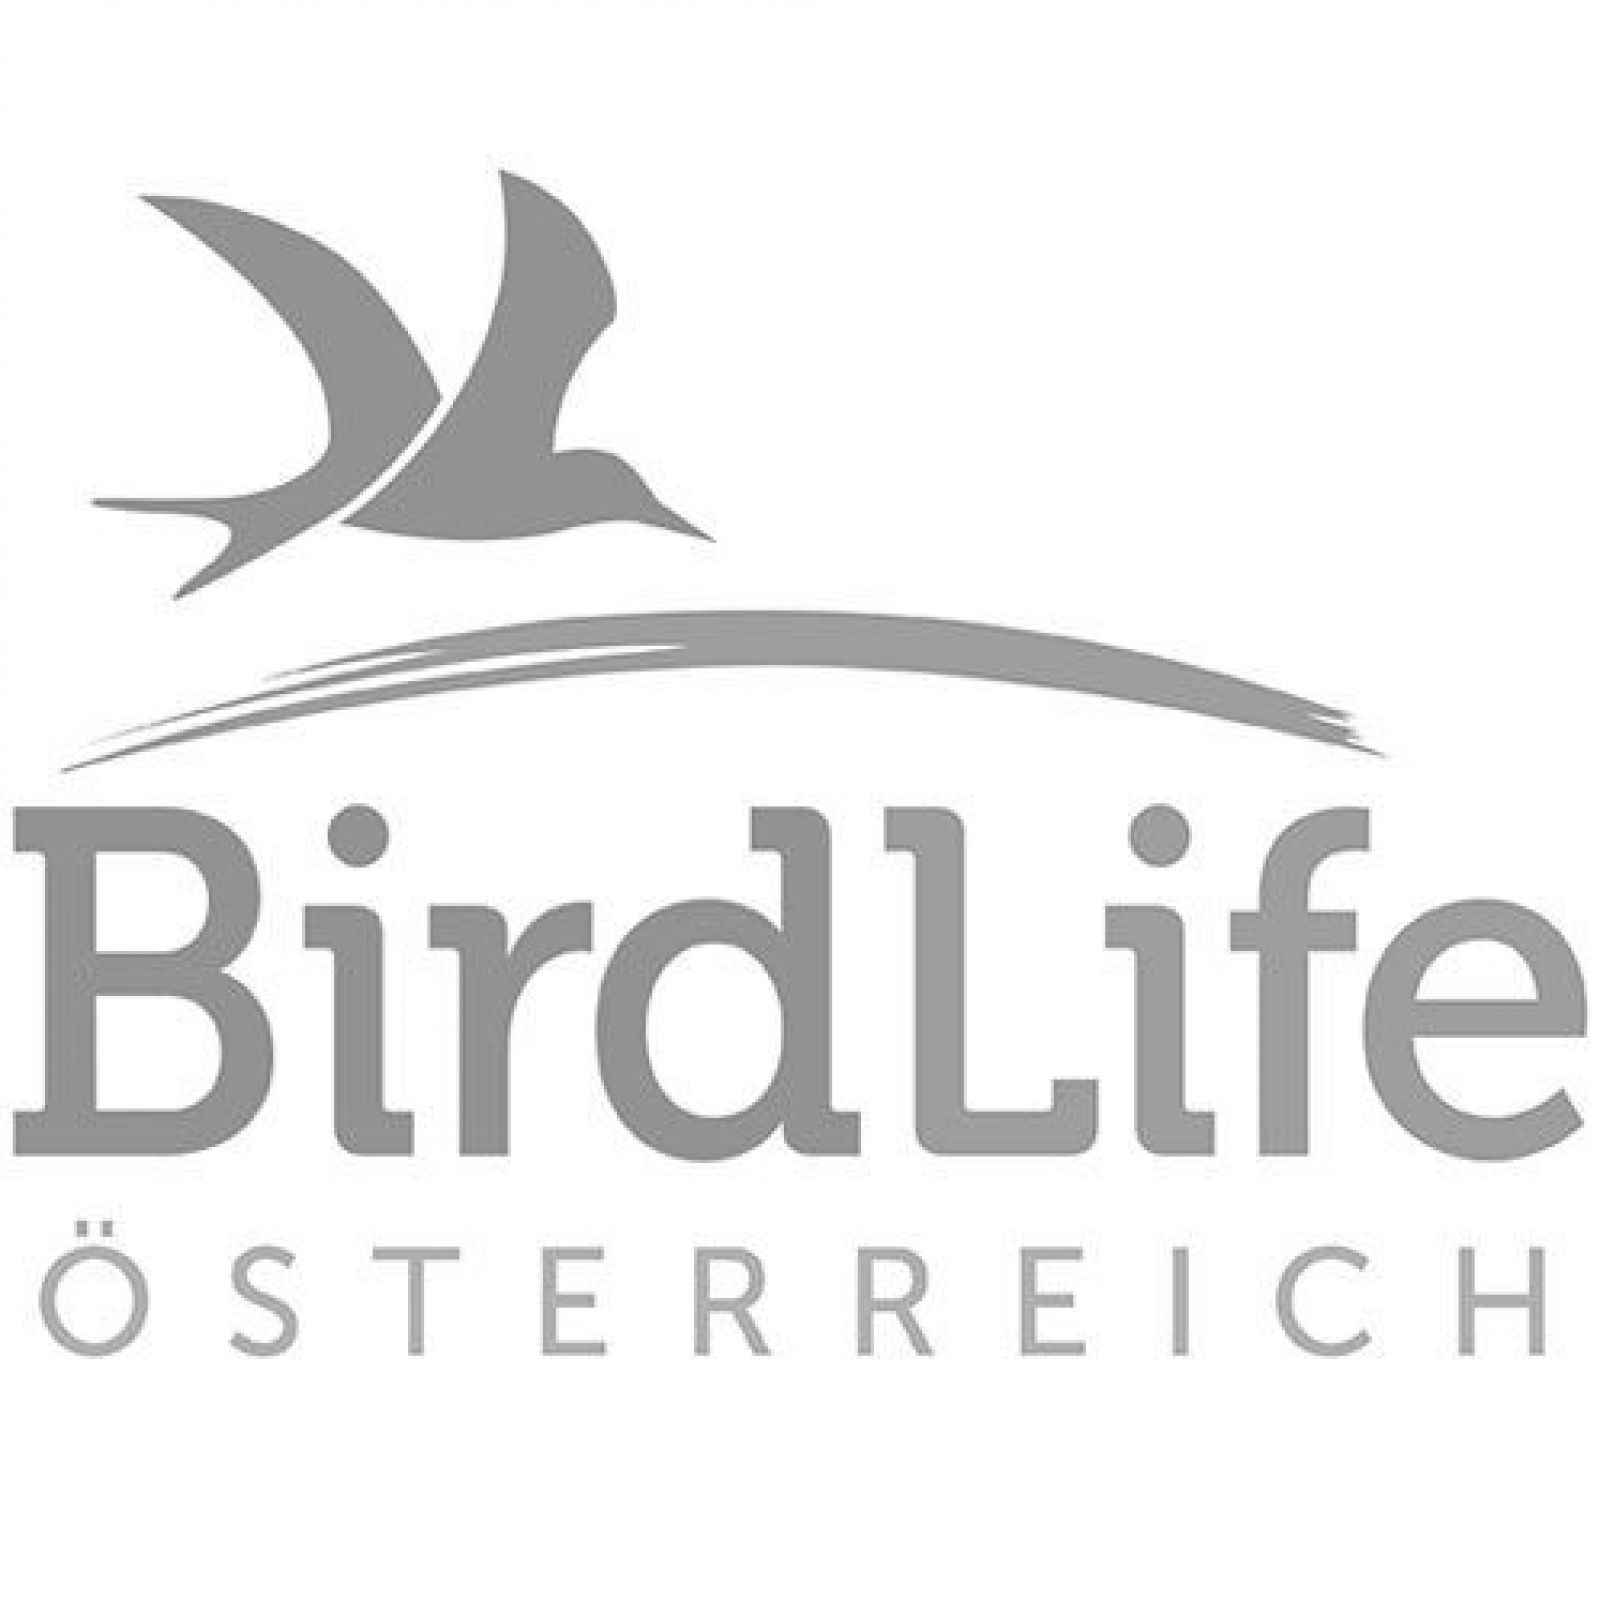 q_birdlife